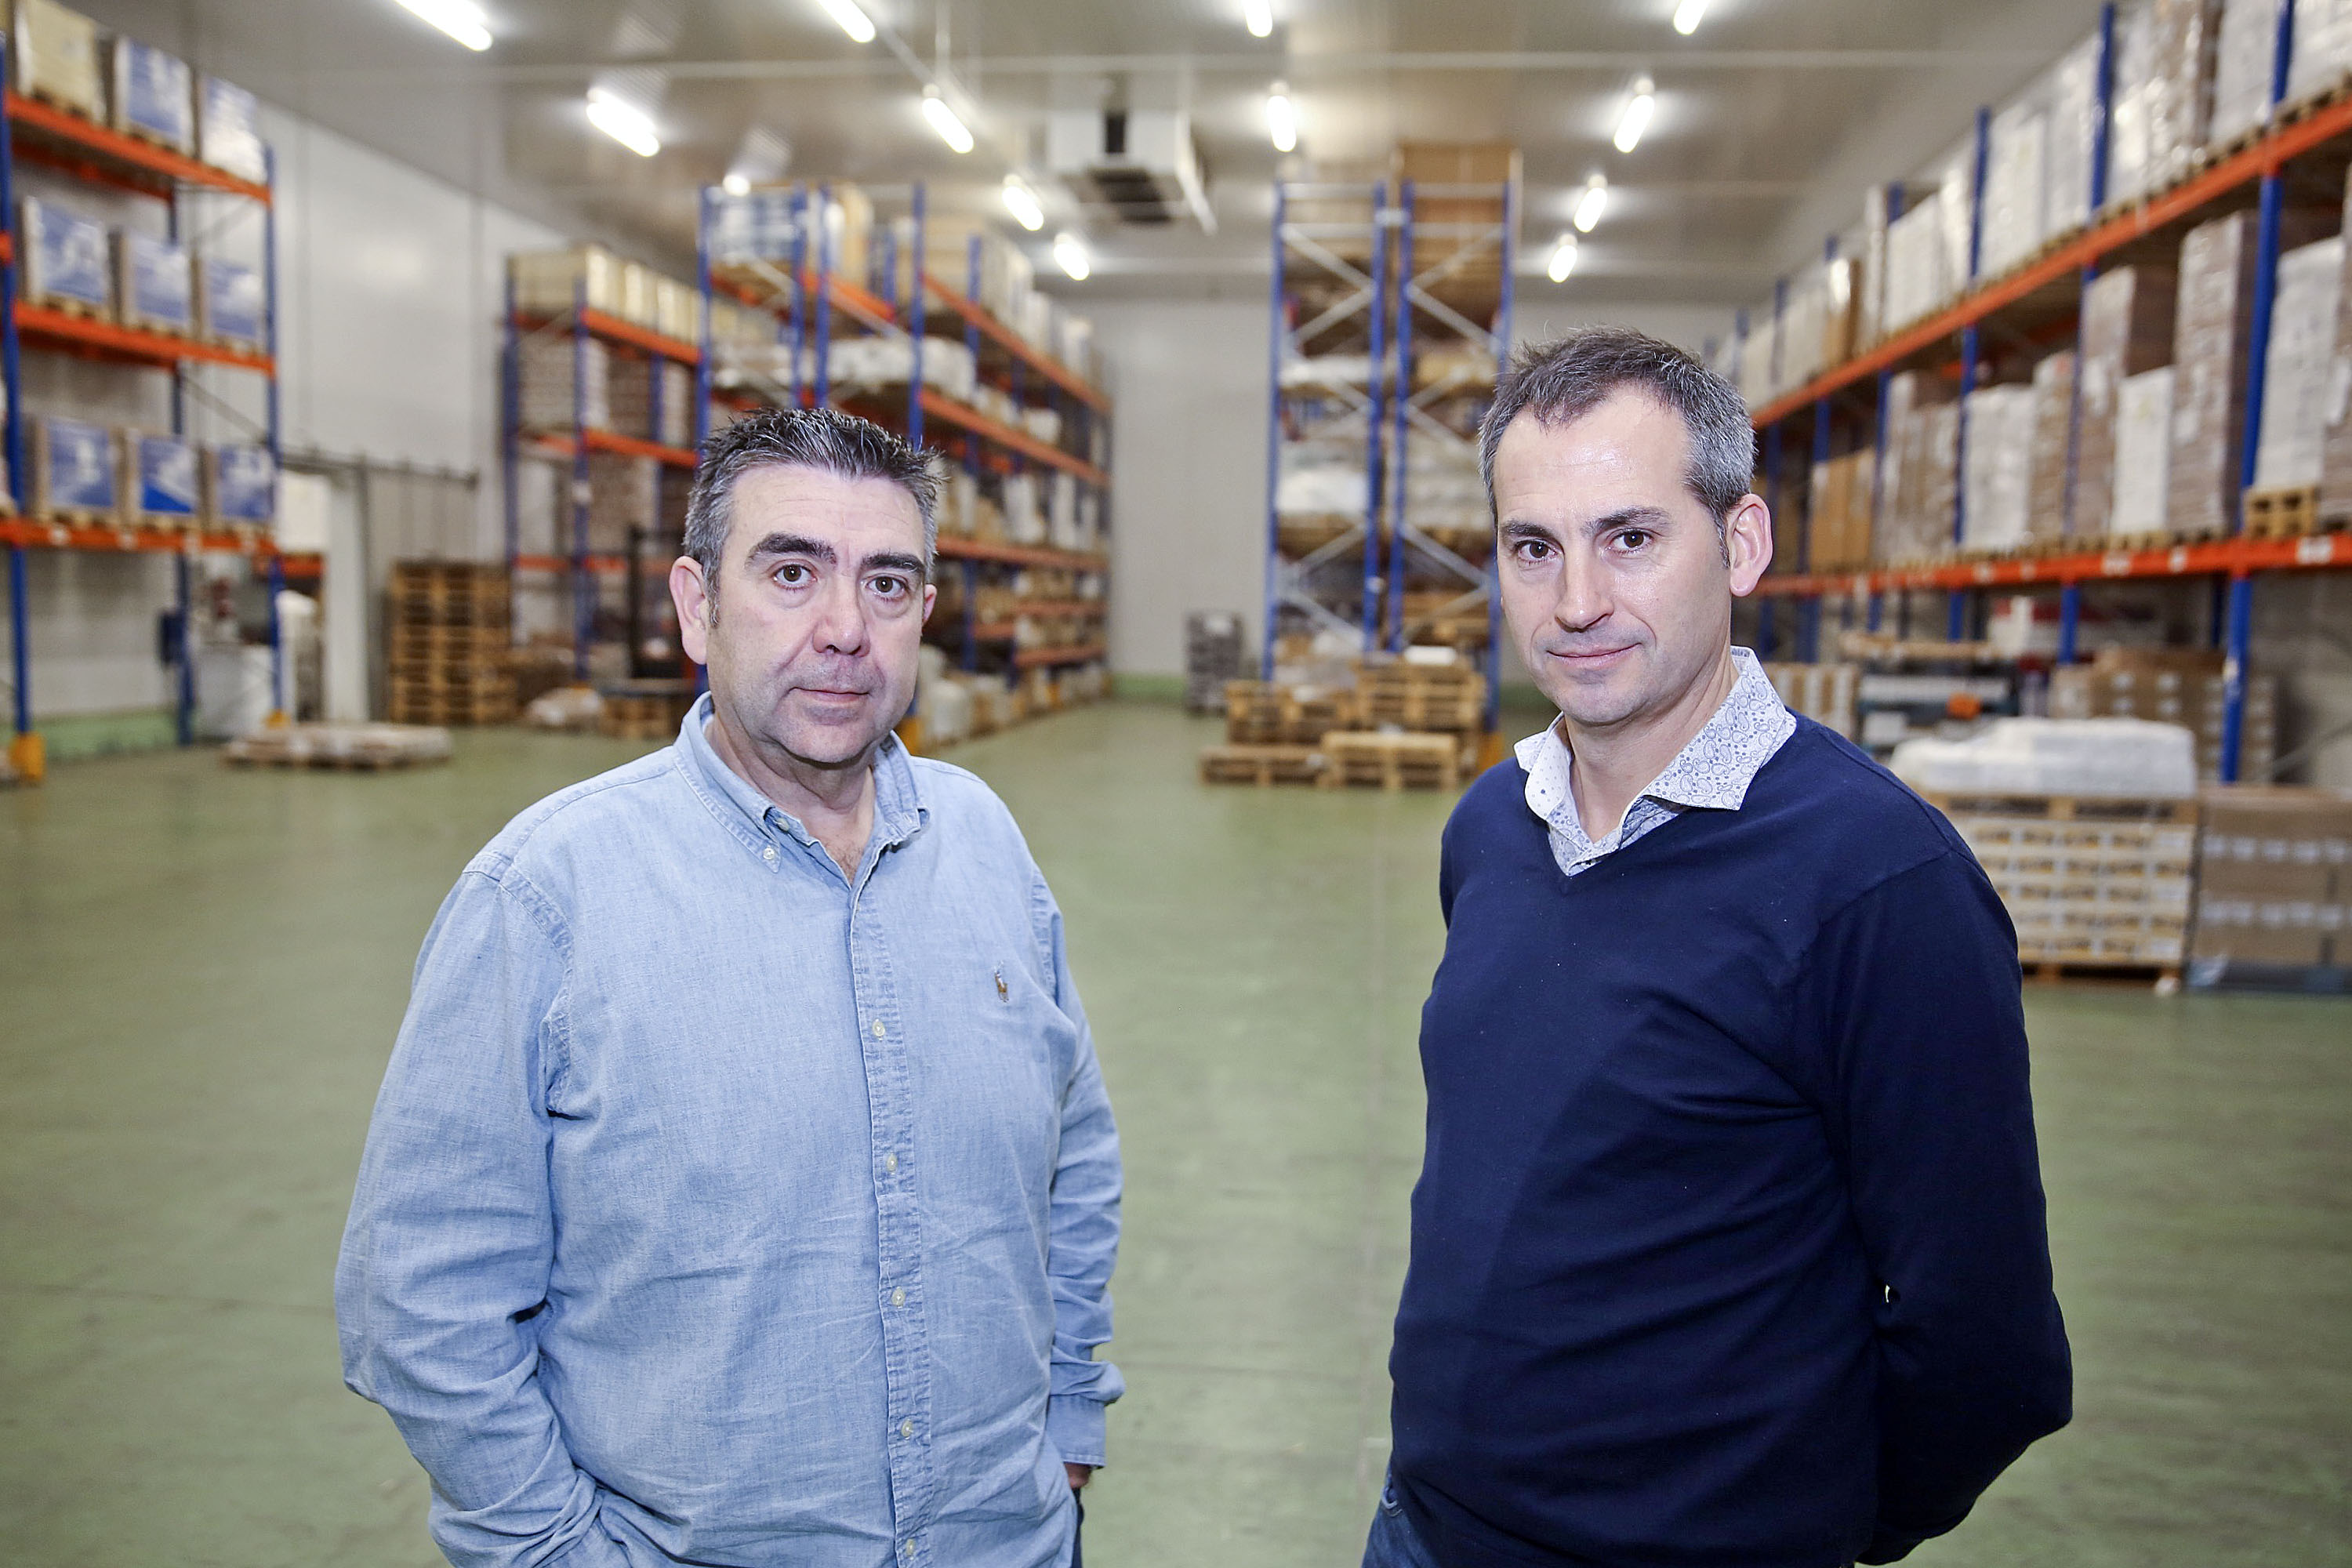 Francesc Espinosa i Joan Casanovas, en un dels magatzems de l’empresa en el moment que s’havien buidat per repartir